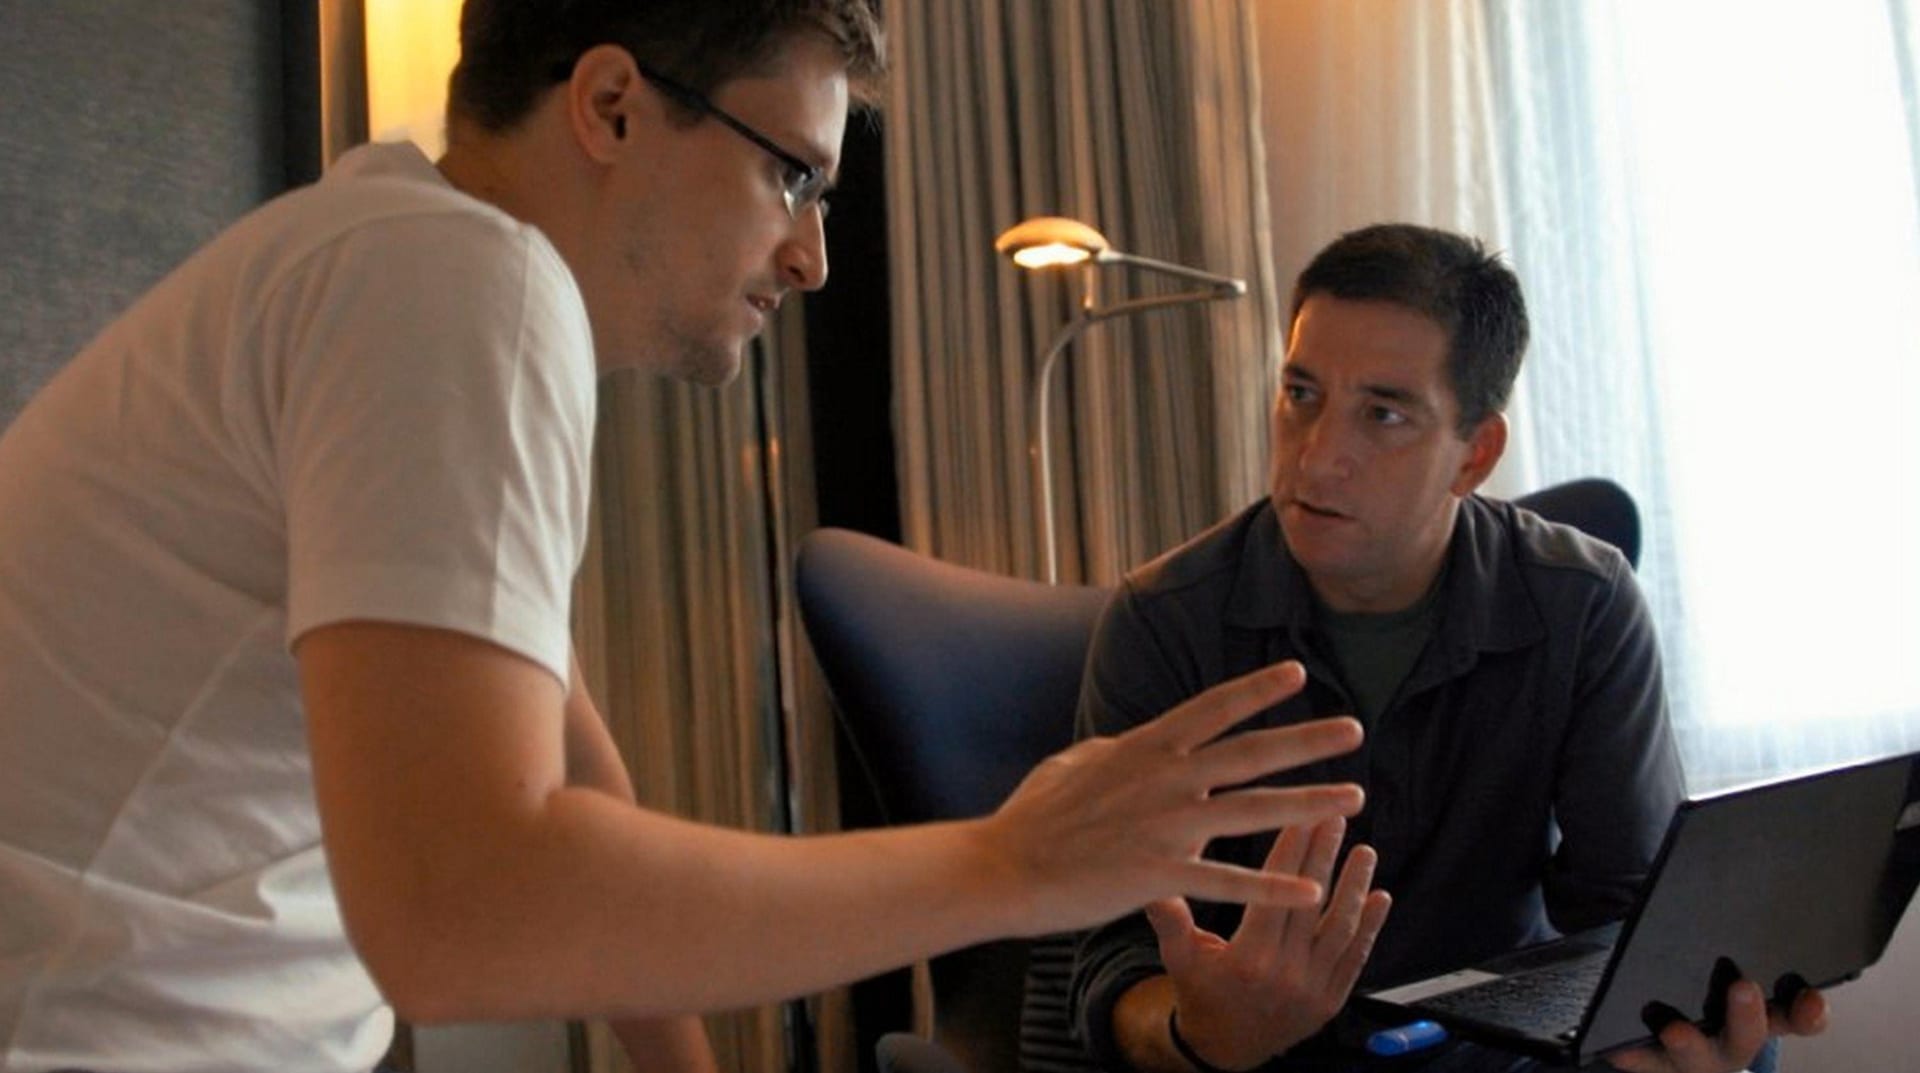 Nejvýbušnější materiály svojí kariéry začal Greenwald (vpravo) vypouštět 6. června 2013. Informace získal od Edwarda Snowdena (vlevo).